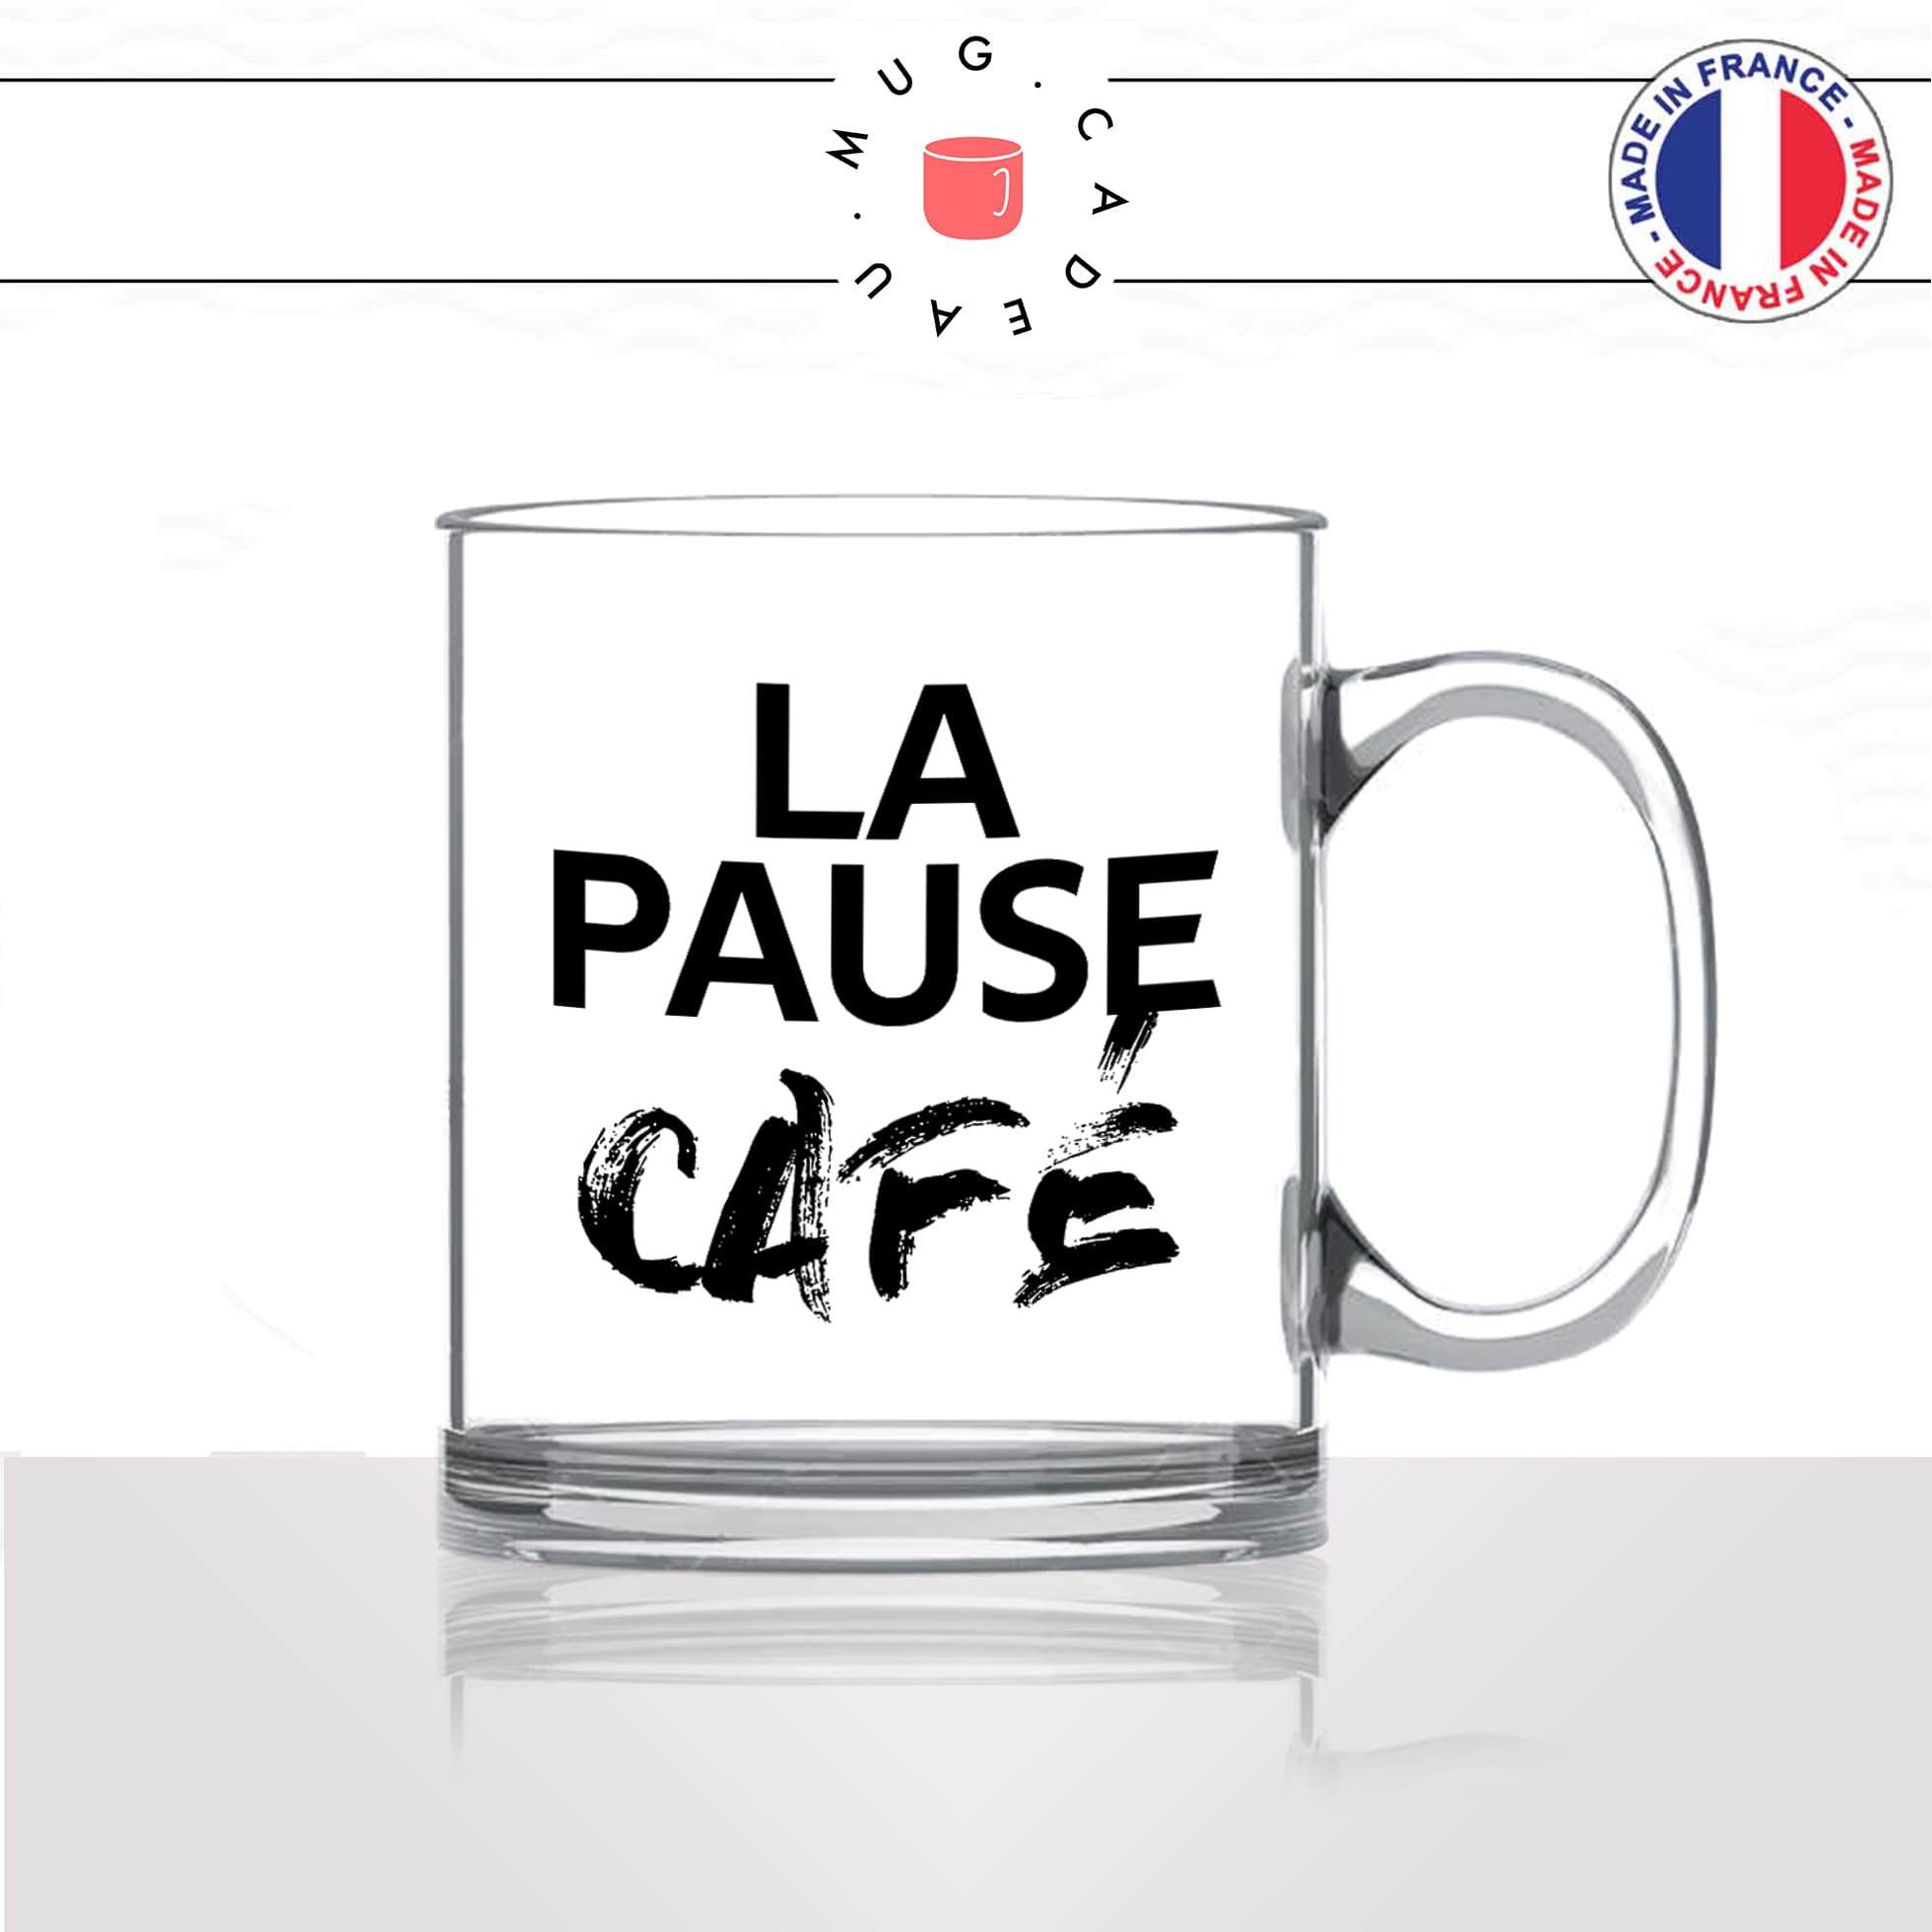 mug-tasse-en-verre-transparent-glass-la-pause-café-thé-collegue-travail-boulot-homme-femme-accro-humour-fun-idée-cadeau-originale-cool2